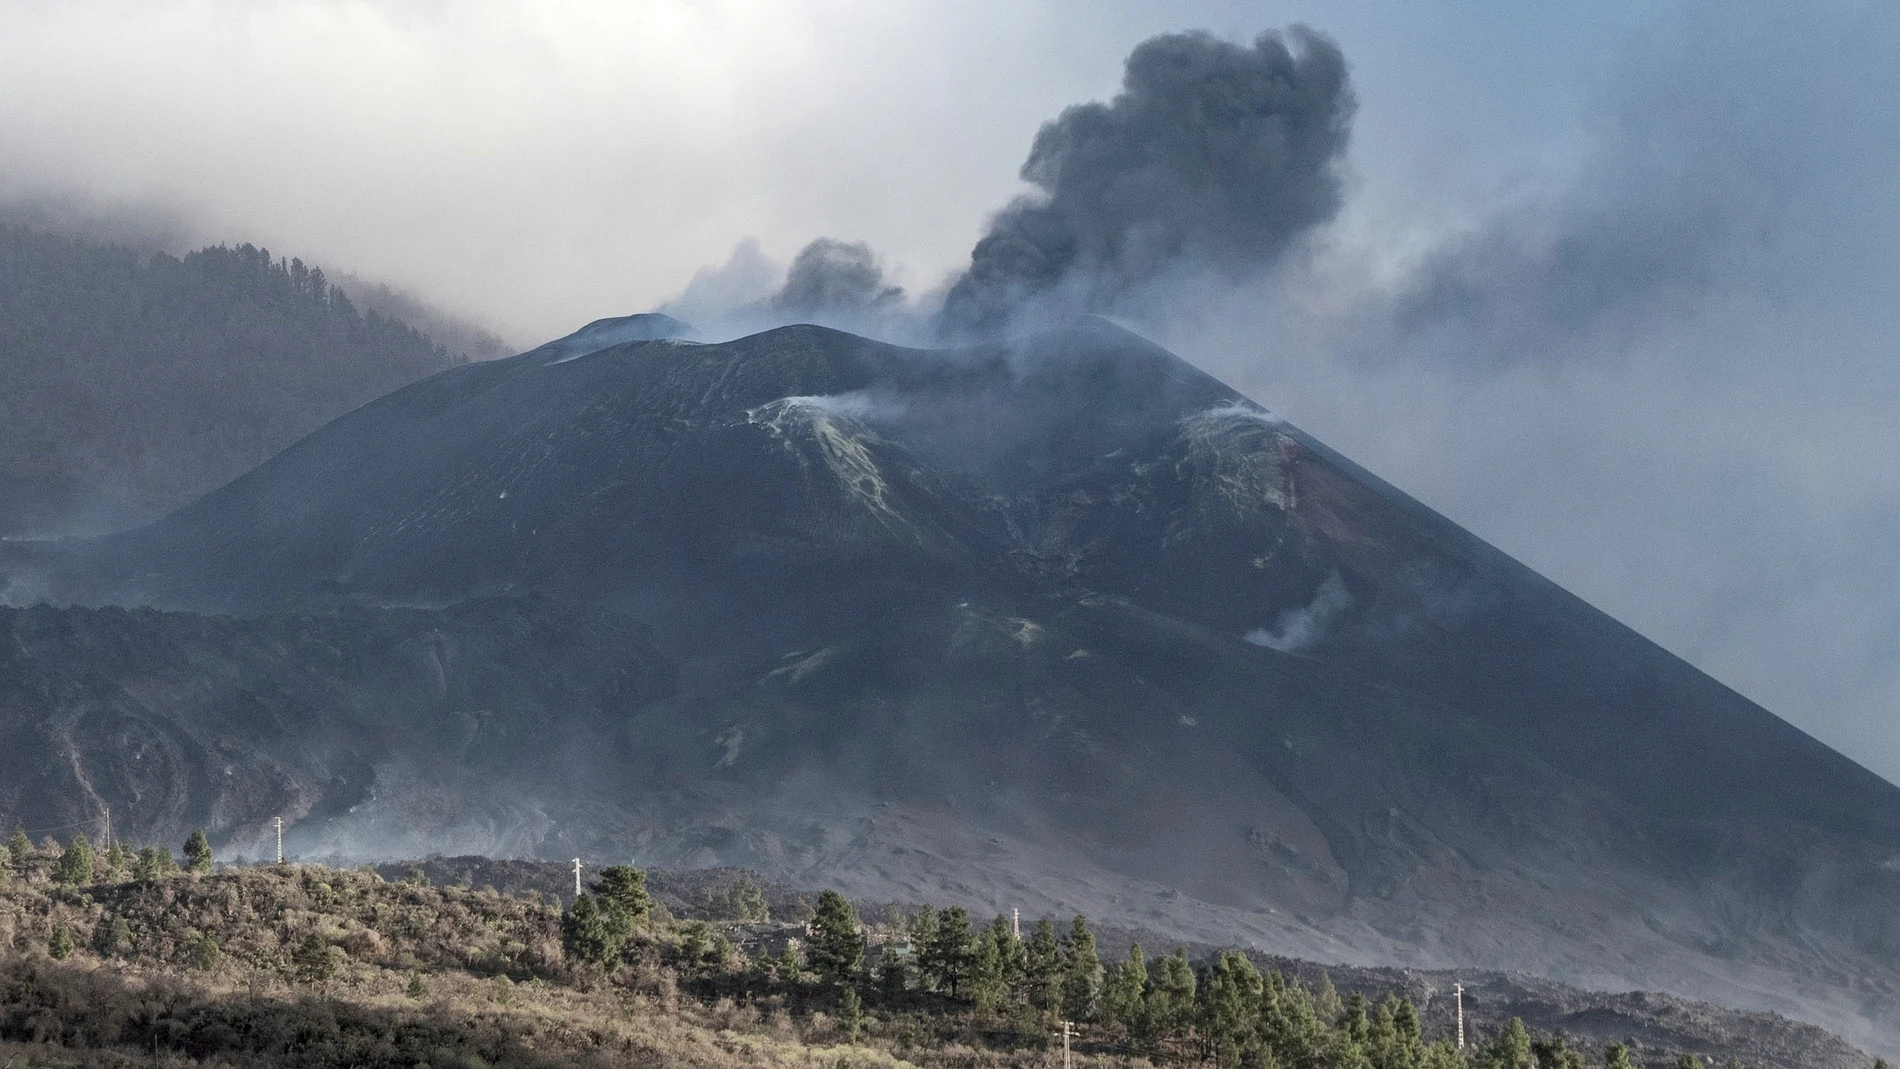 El volcán de La Palma, cesó su actividad explosiva este viernes por la tarde, lo que permite verlo con más claridad